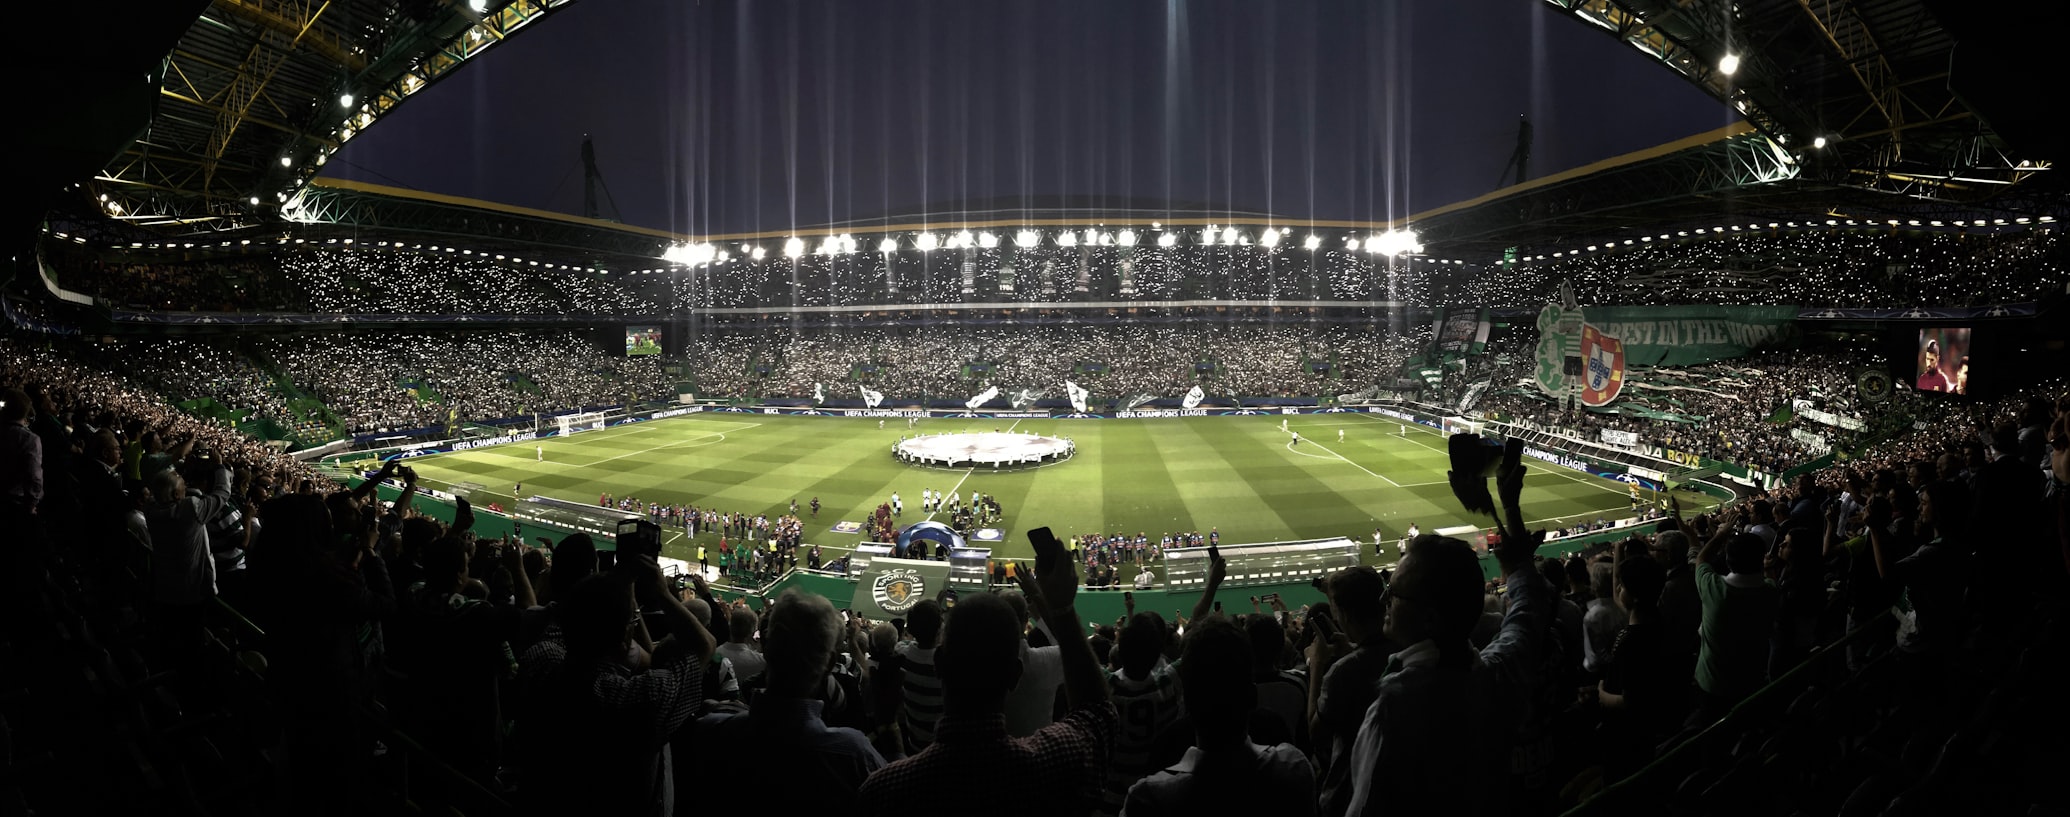 Portugal Stadium